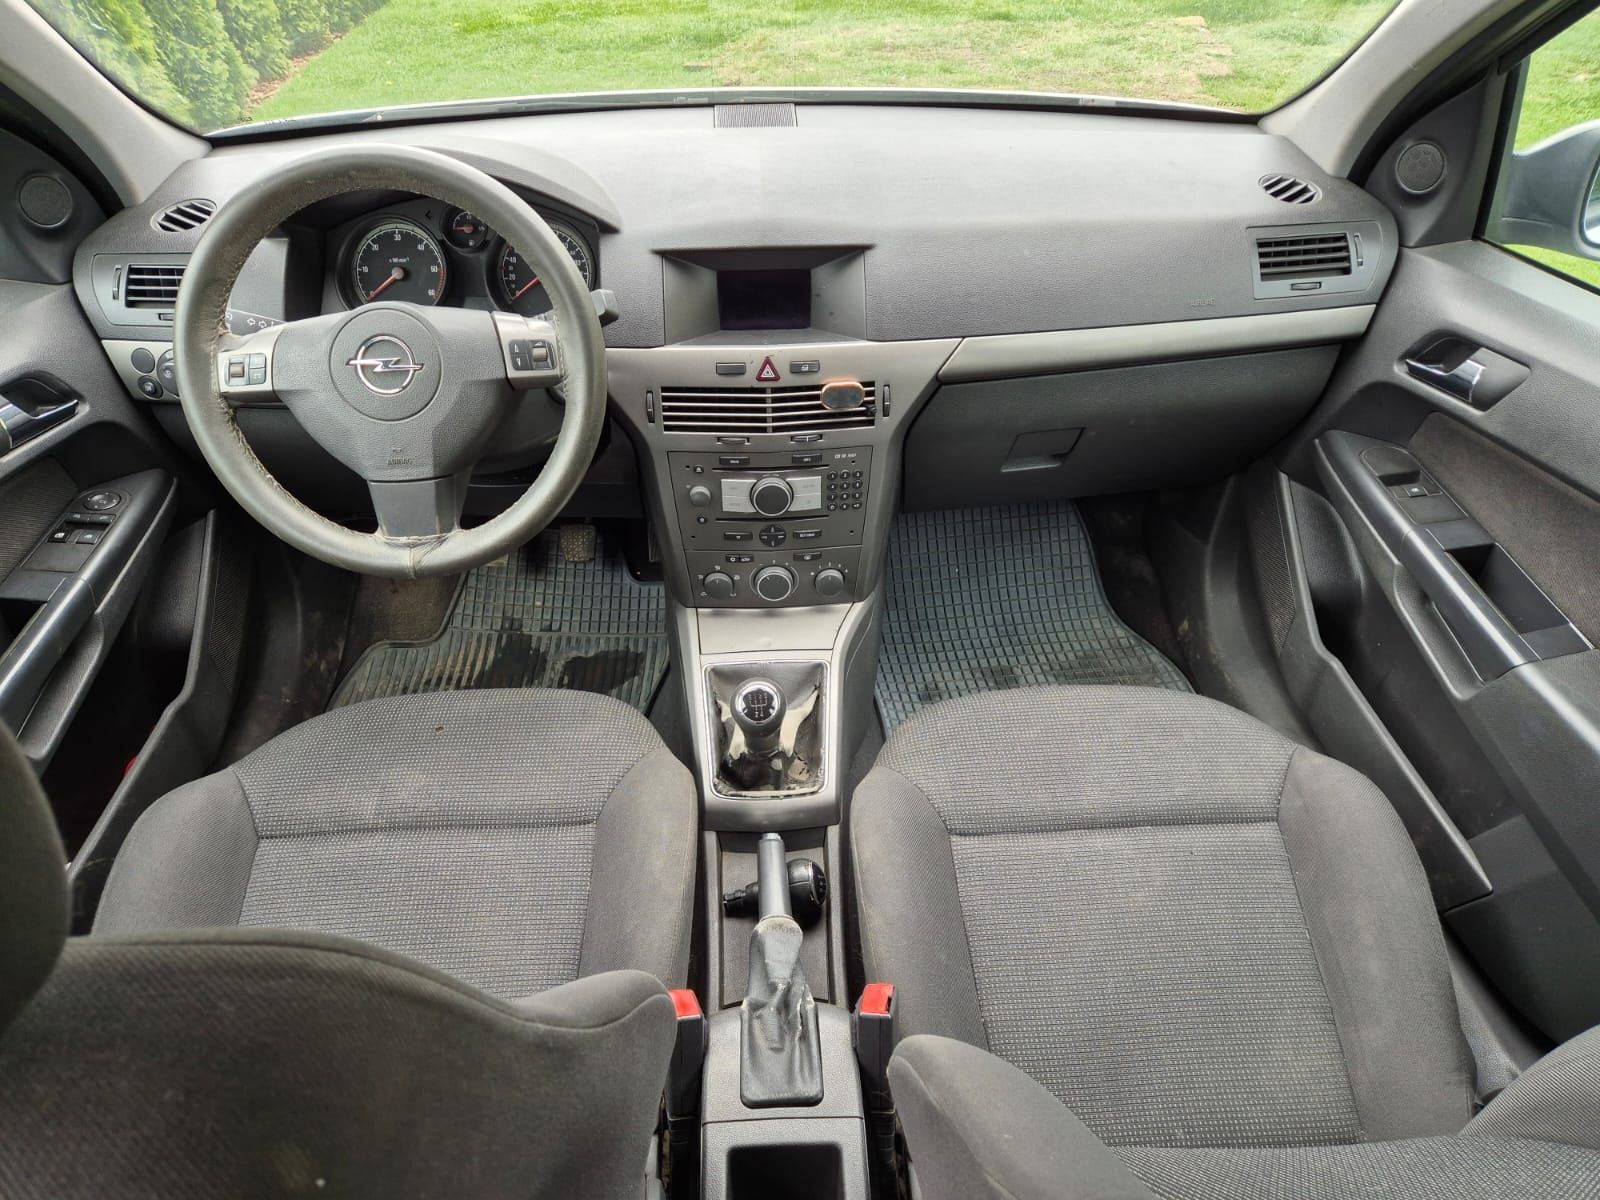 Opel Astra H 1.7 CDTI. Ładna. W pełni sprawna.